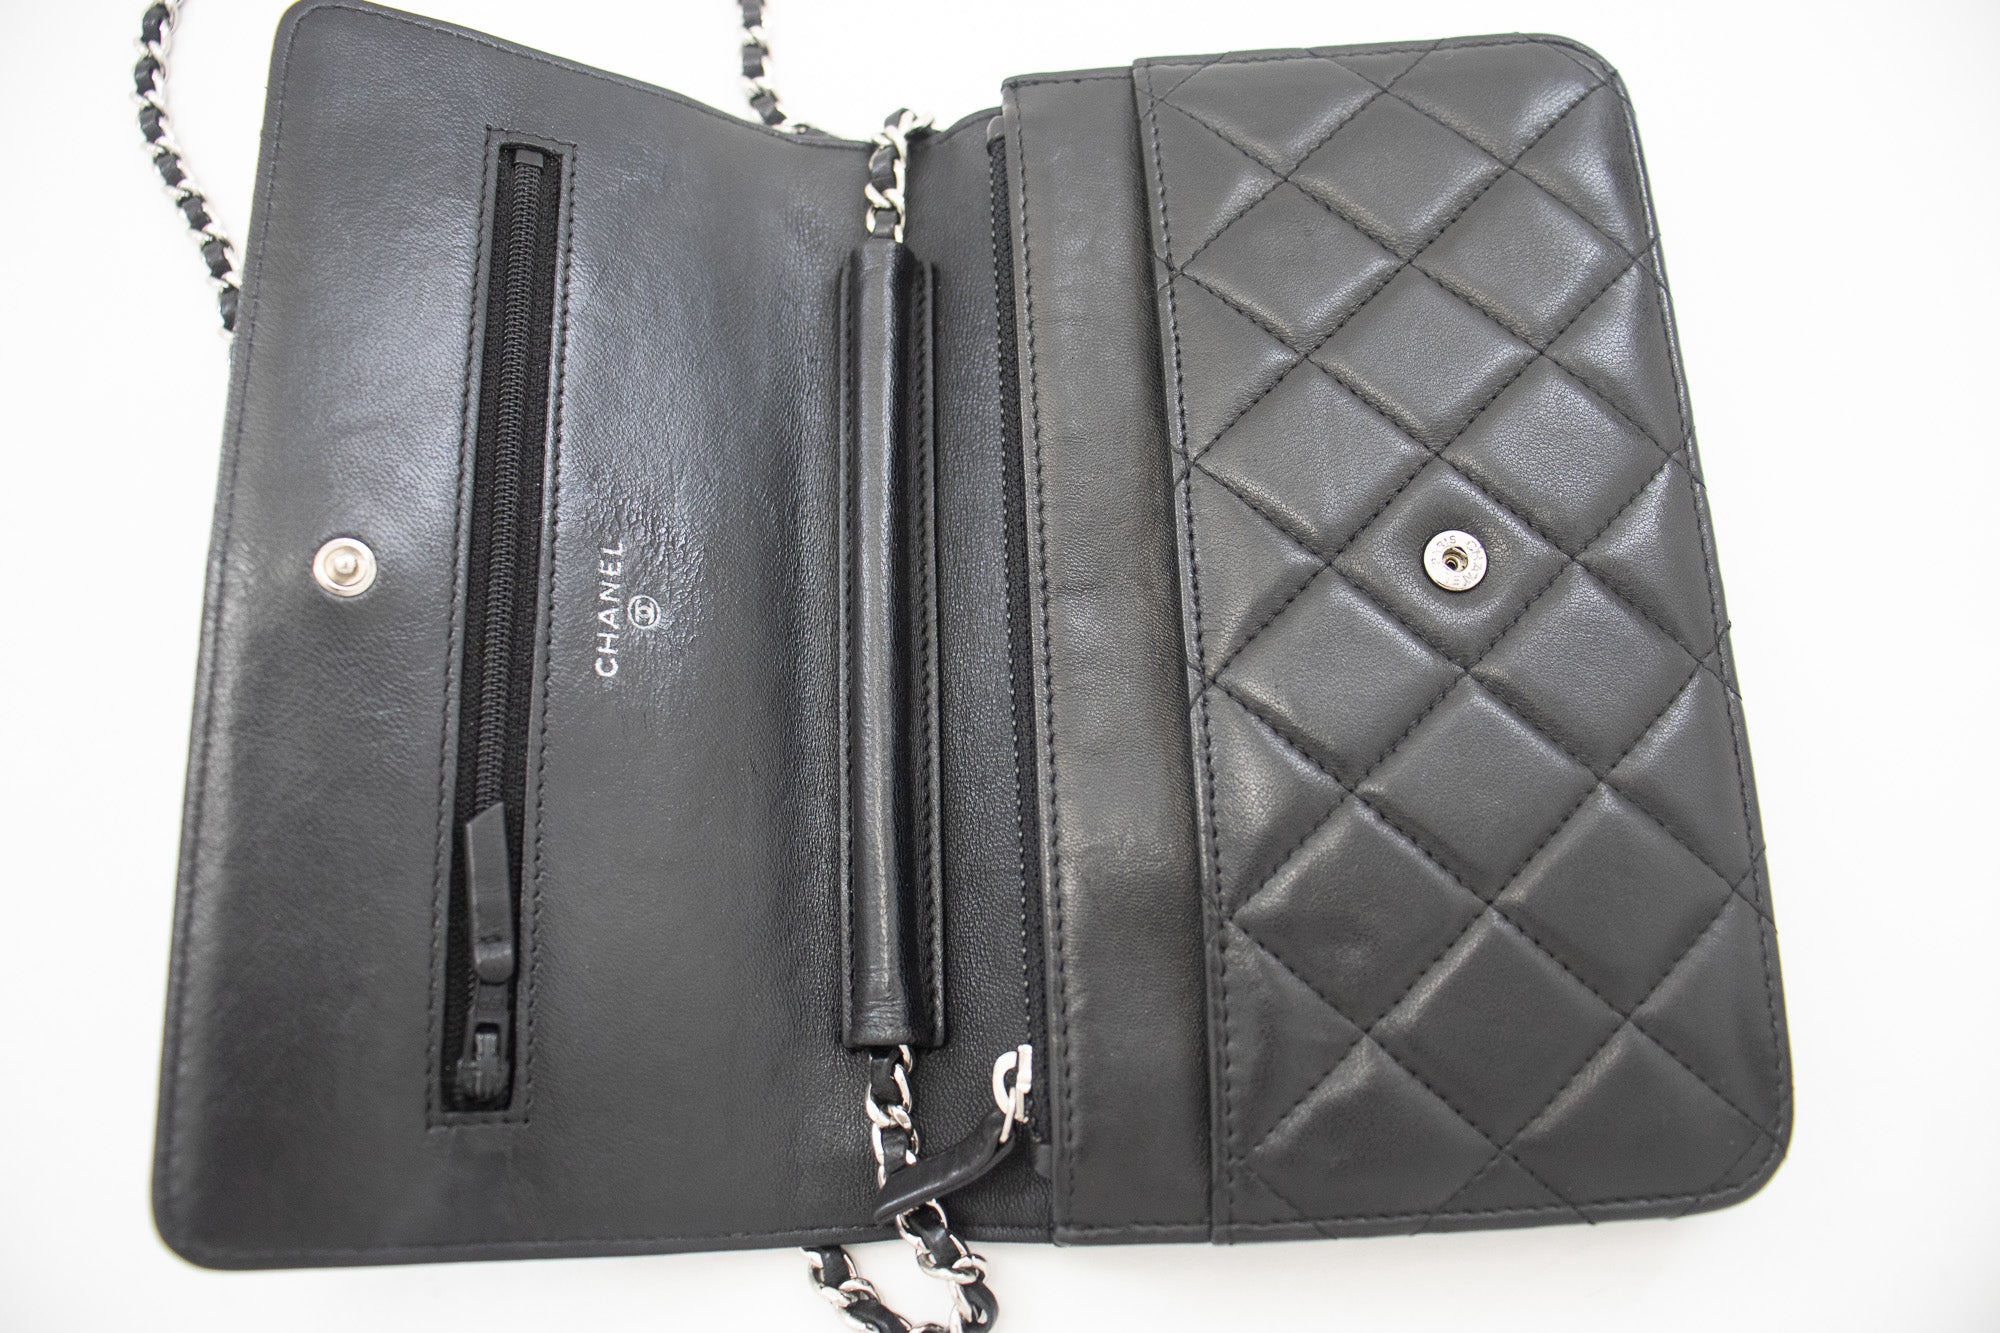 Chanel Chanel 19 Lambskin Wallet on Chain